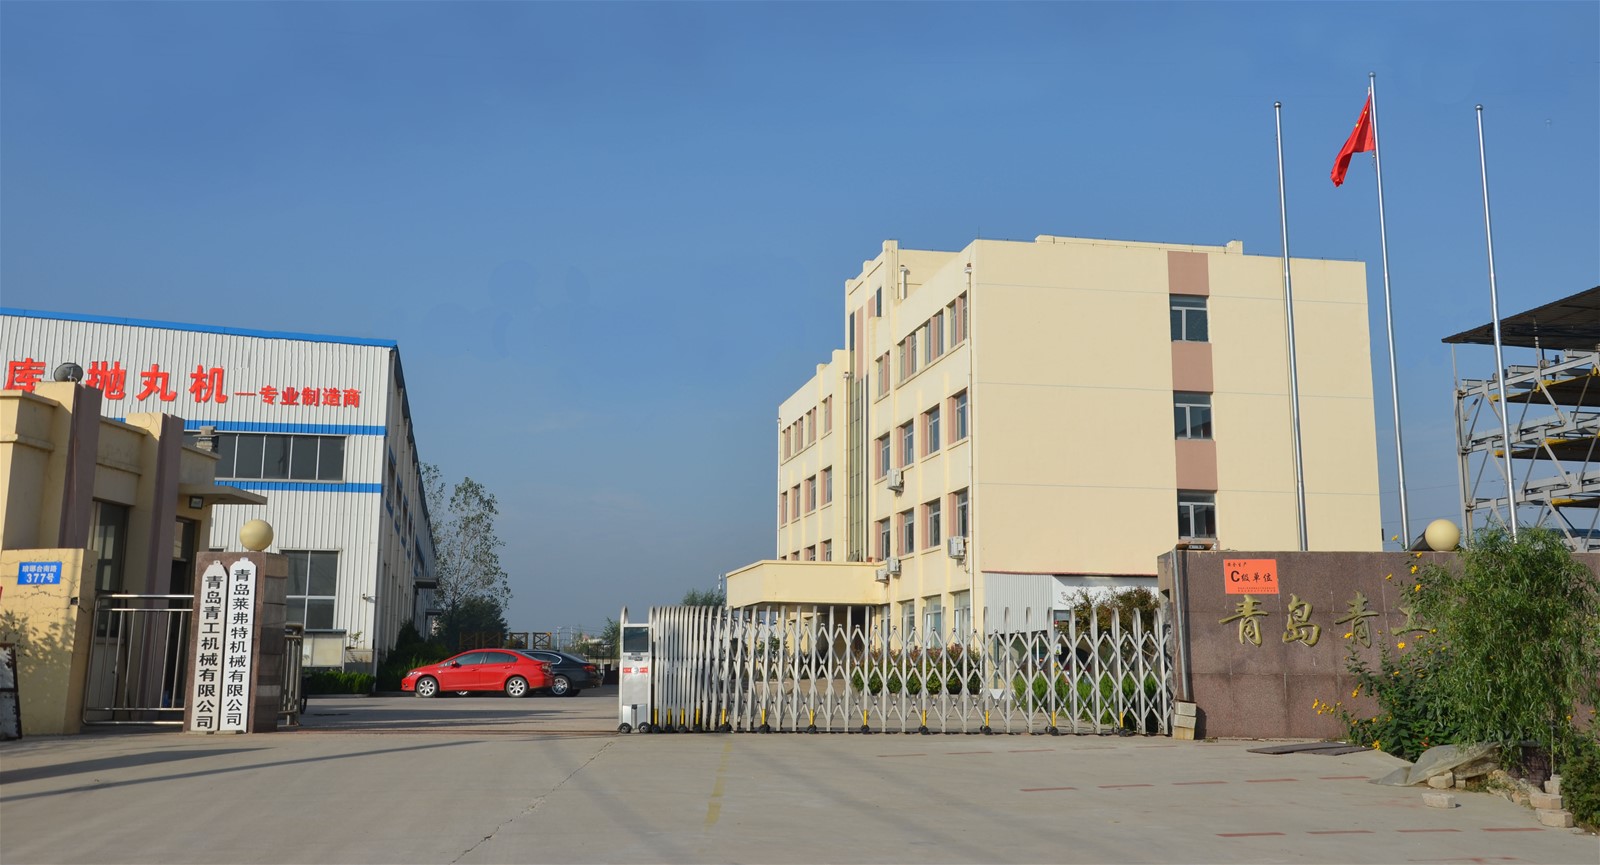 Qingdao Qinggong Machinery Co., Ltd.